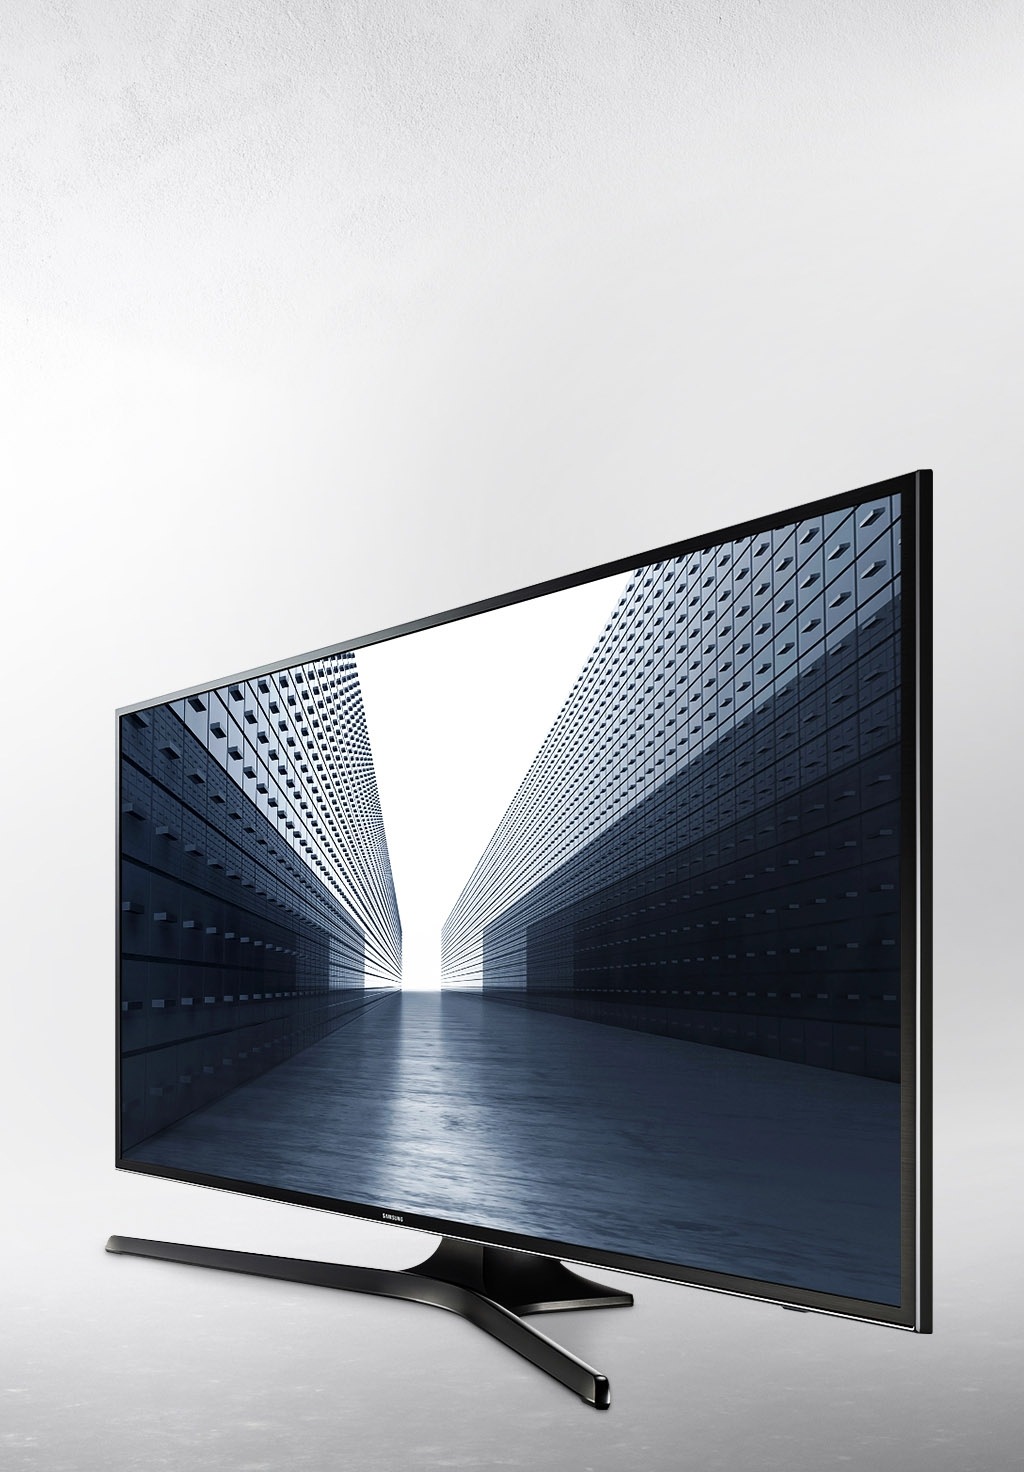 화면 중앙에 삼성 UHD TV 2개가 보여지고 있으며, 왼쪽 측면 30도 모습과 오른쪽 측면 30도 모습이 보여지고 있습니다.